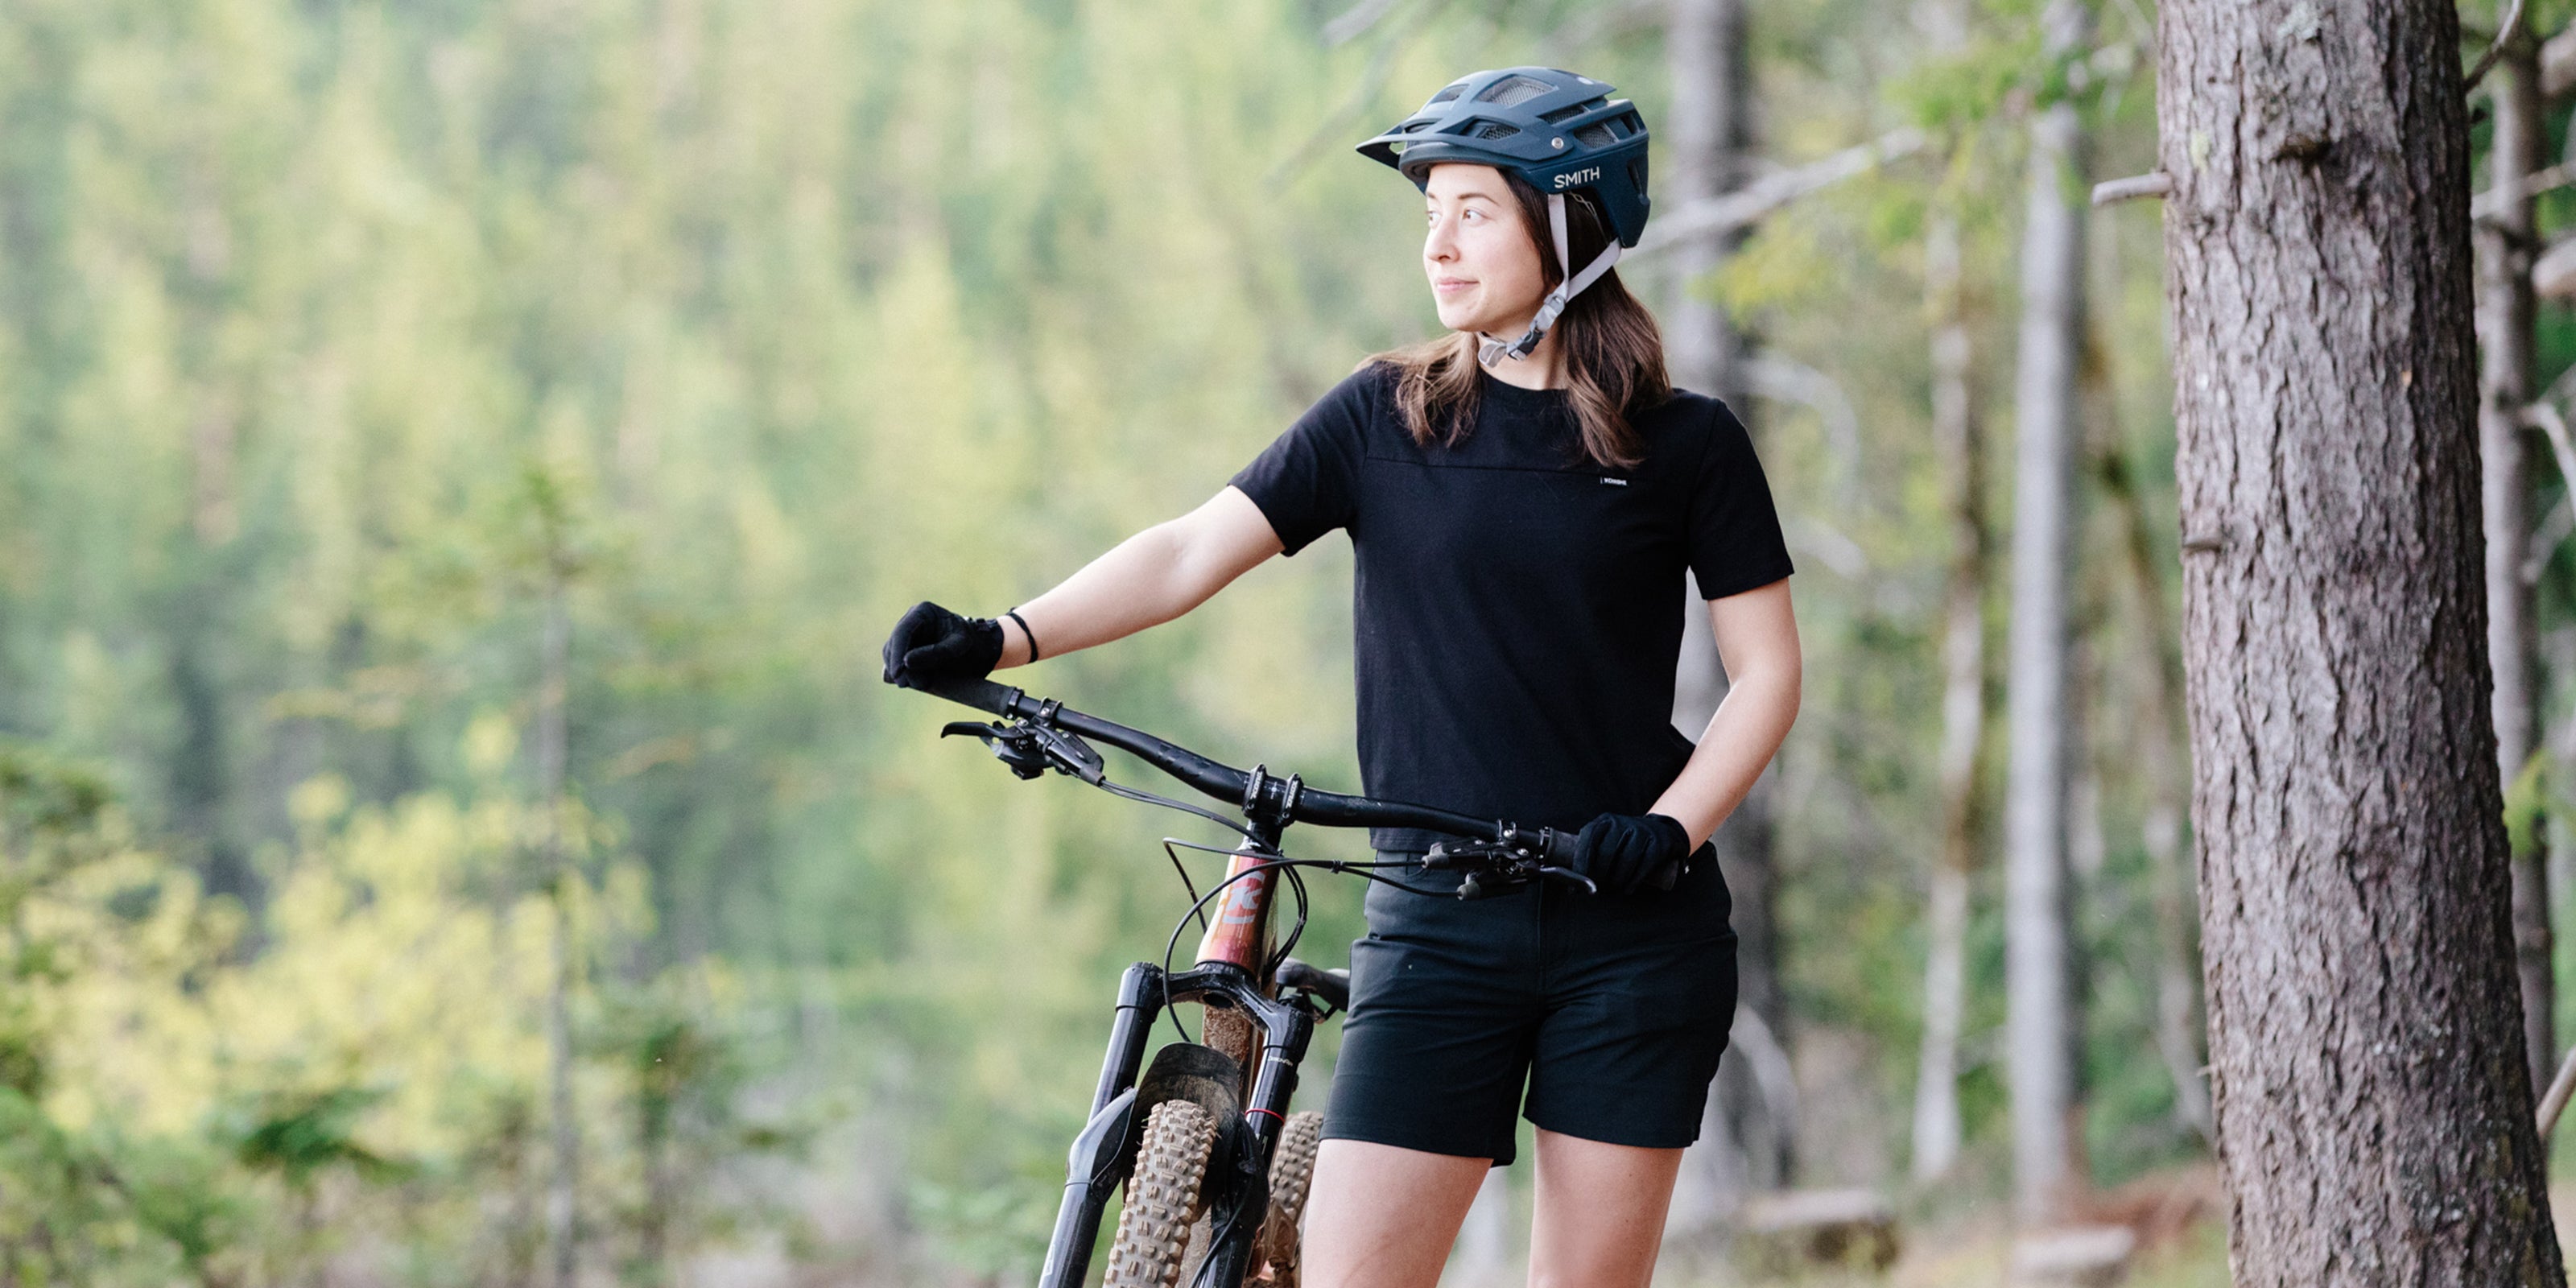 Women's Holman Tee in black worn by a woman riding a mountain bike desktop size image